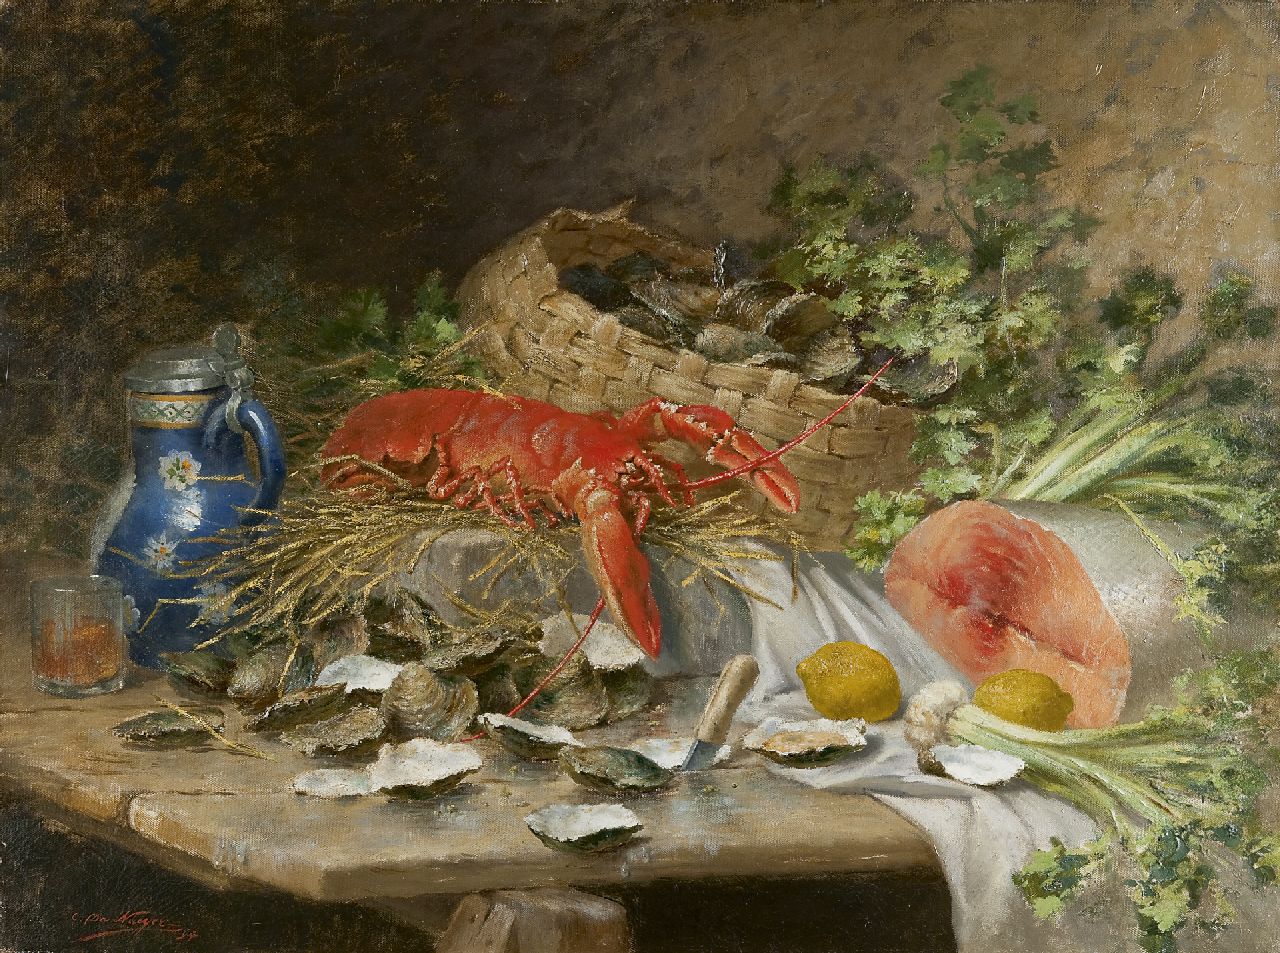 Naeyer C. de | Charles de Naeyer, Stilleven met een kreeft, zalm en oesters, olieverf op doek 75,4 x 100,6 cm, gesigneerd linksonder en gedateerd '94